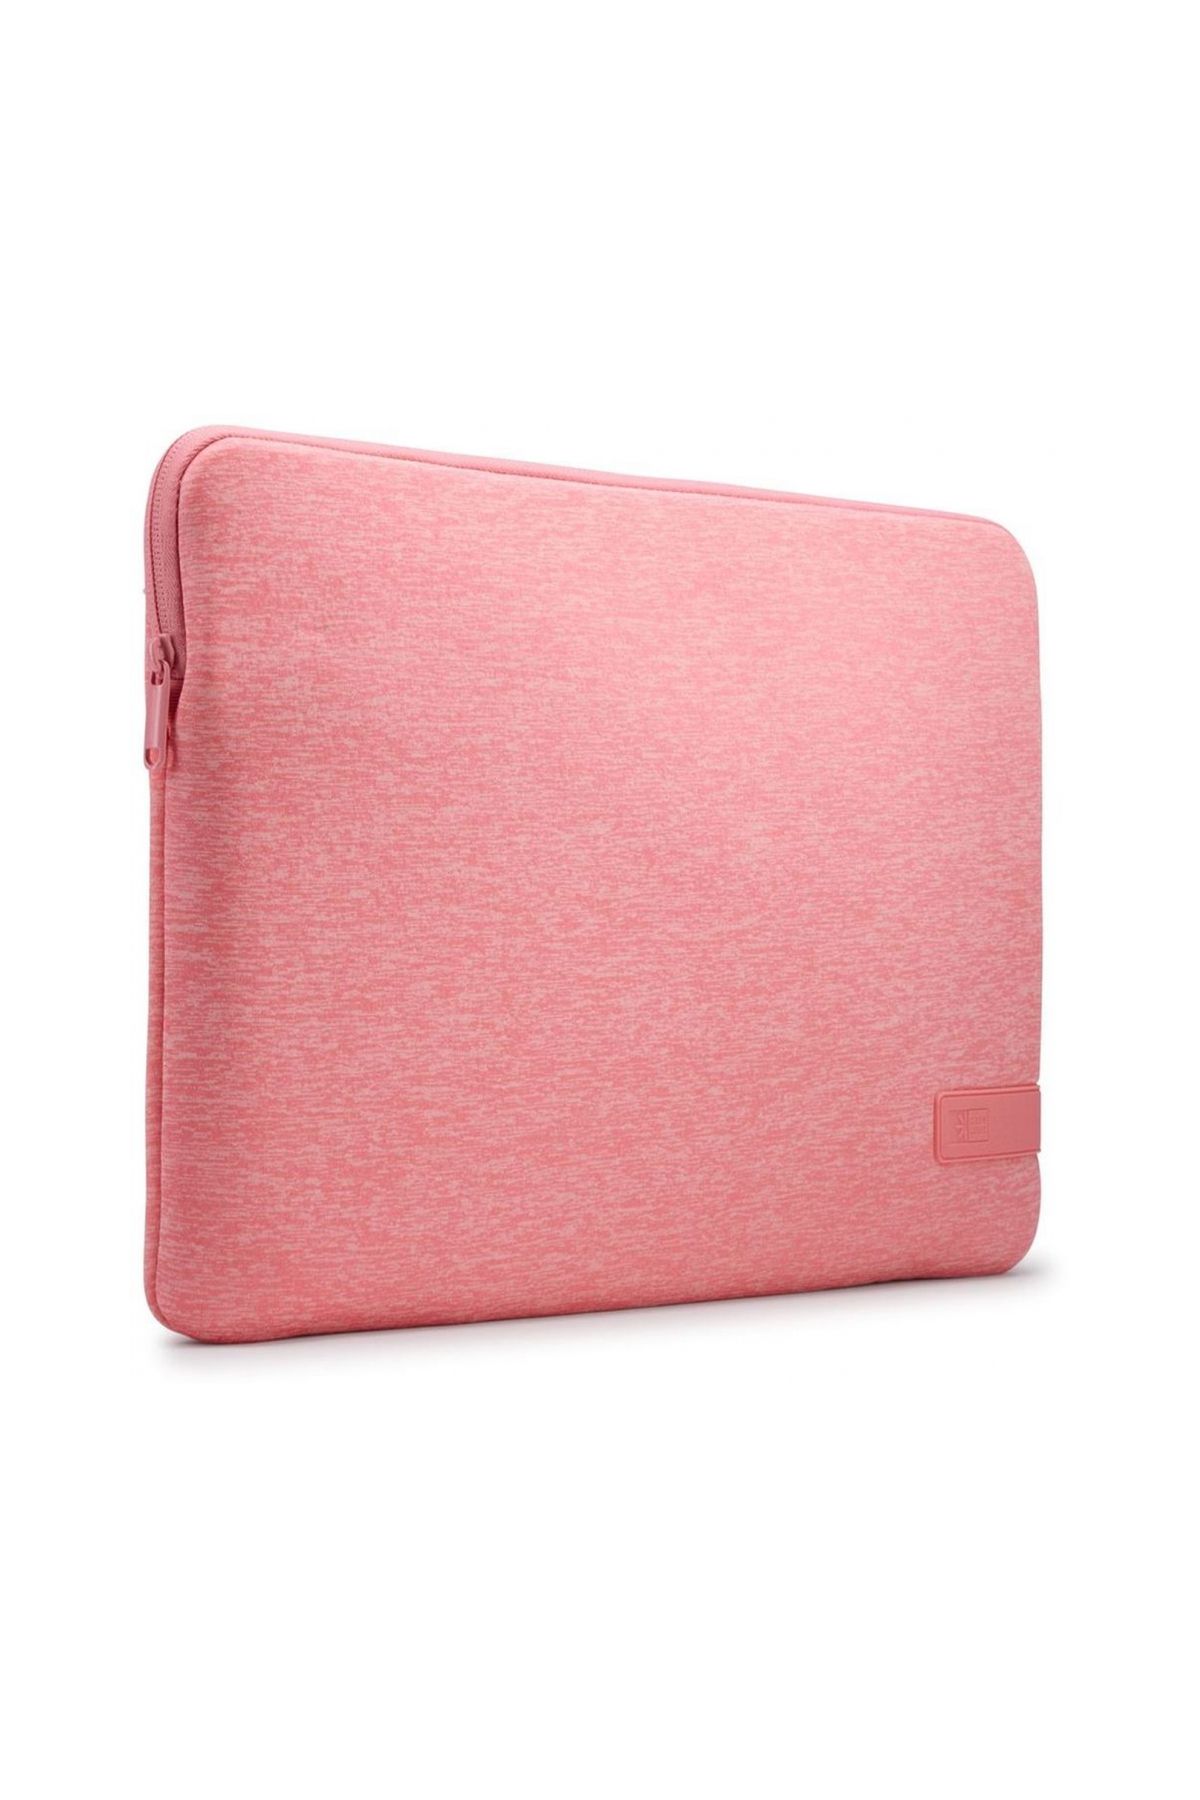 Case Logic Reflect MacBook Kılıfı 15.6 inç - Pomelo Pink